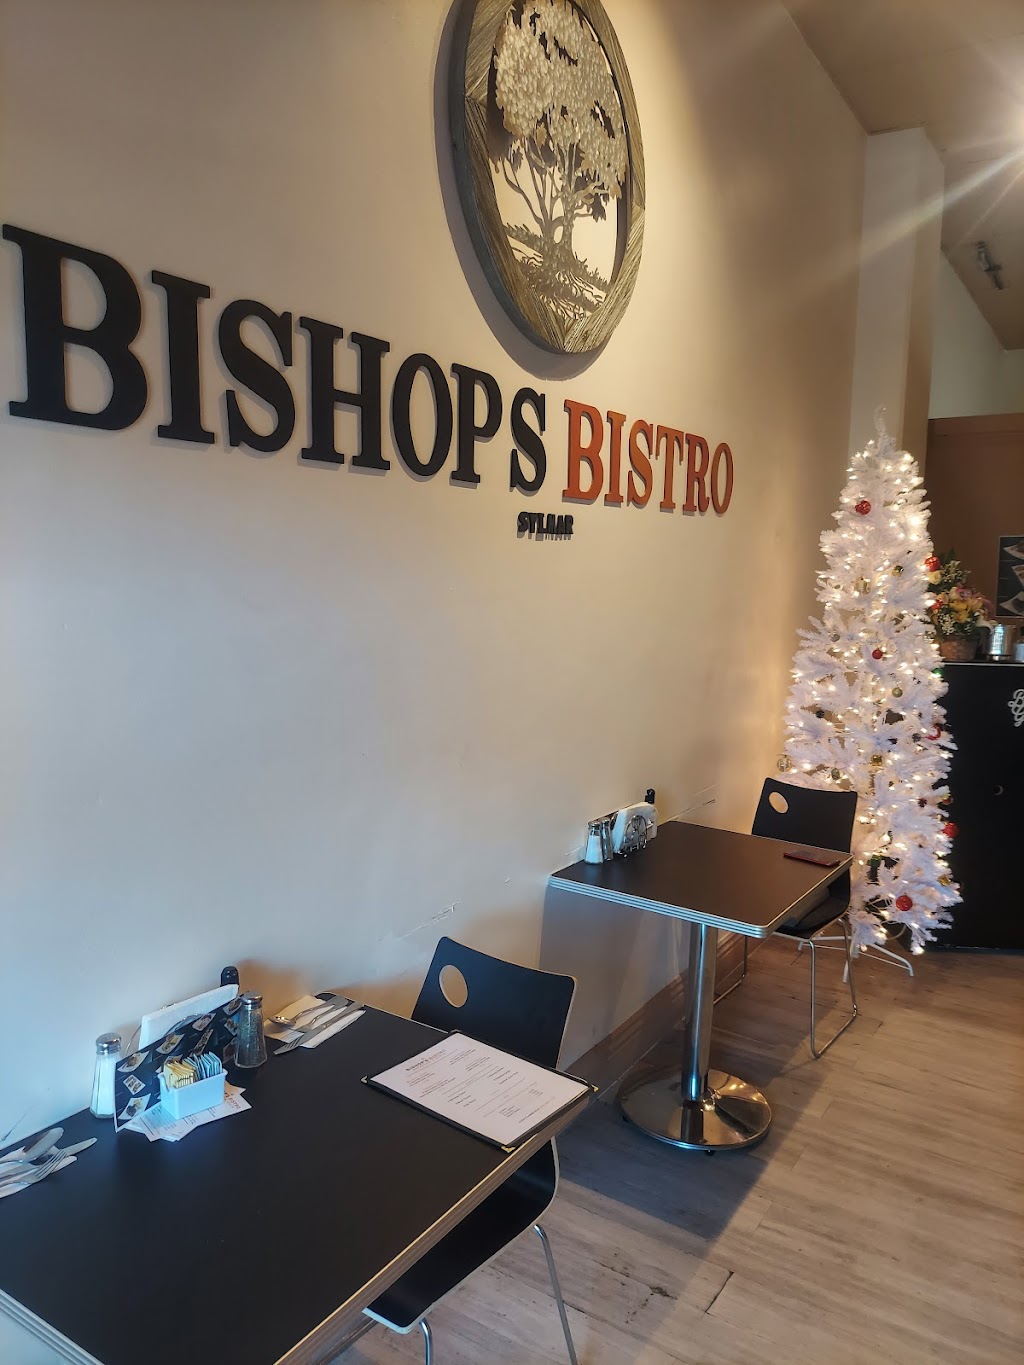 Bishops Bistro | 11936 Foothill Blvd, Sylmar, CA 91342 | Phone: (818) 899-5347